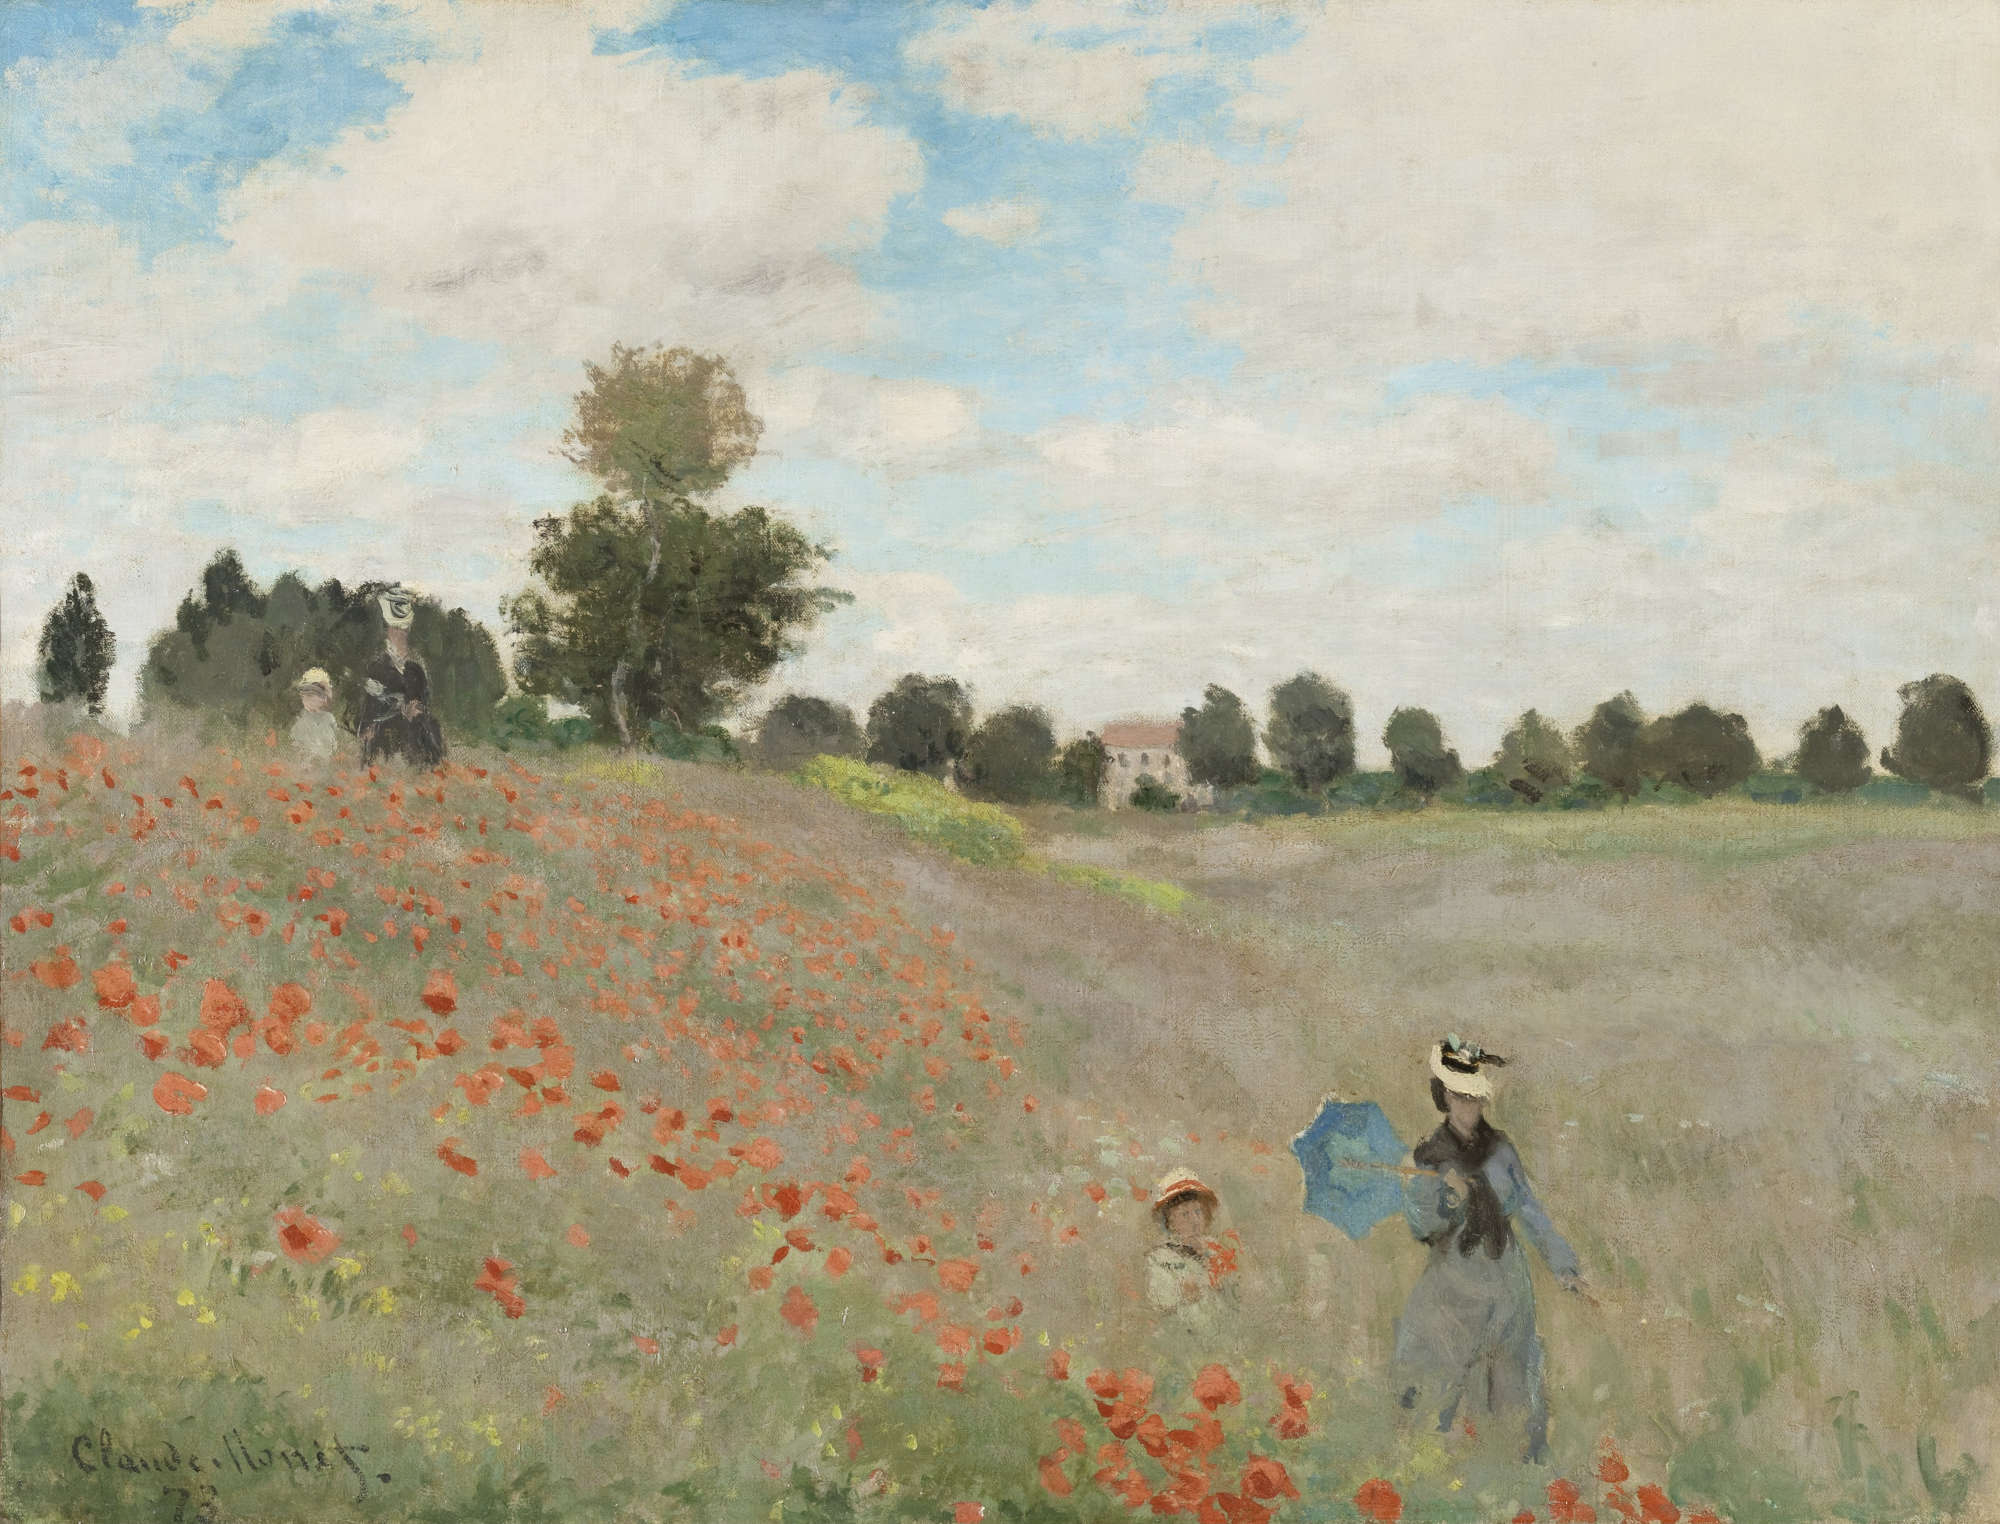 Claude Monet, Poppies (1873; oil on canvas, 50 x 65 cm; Paris, Musée d'Orsay)